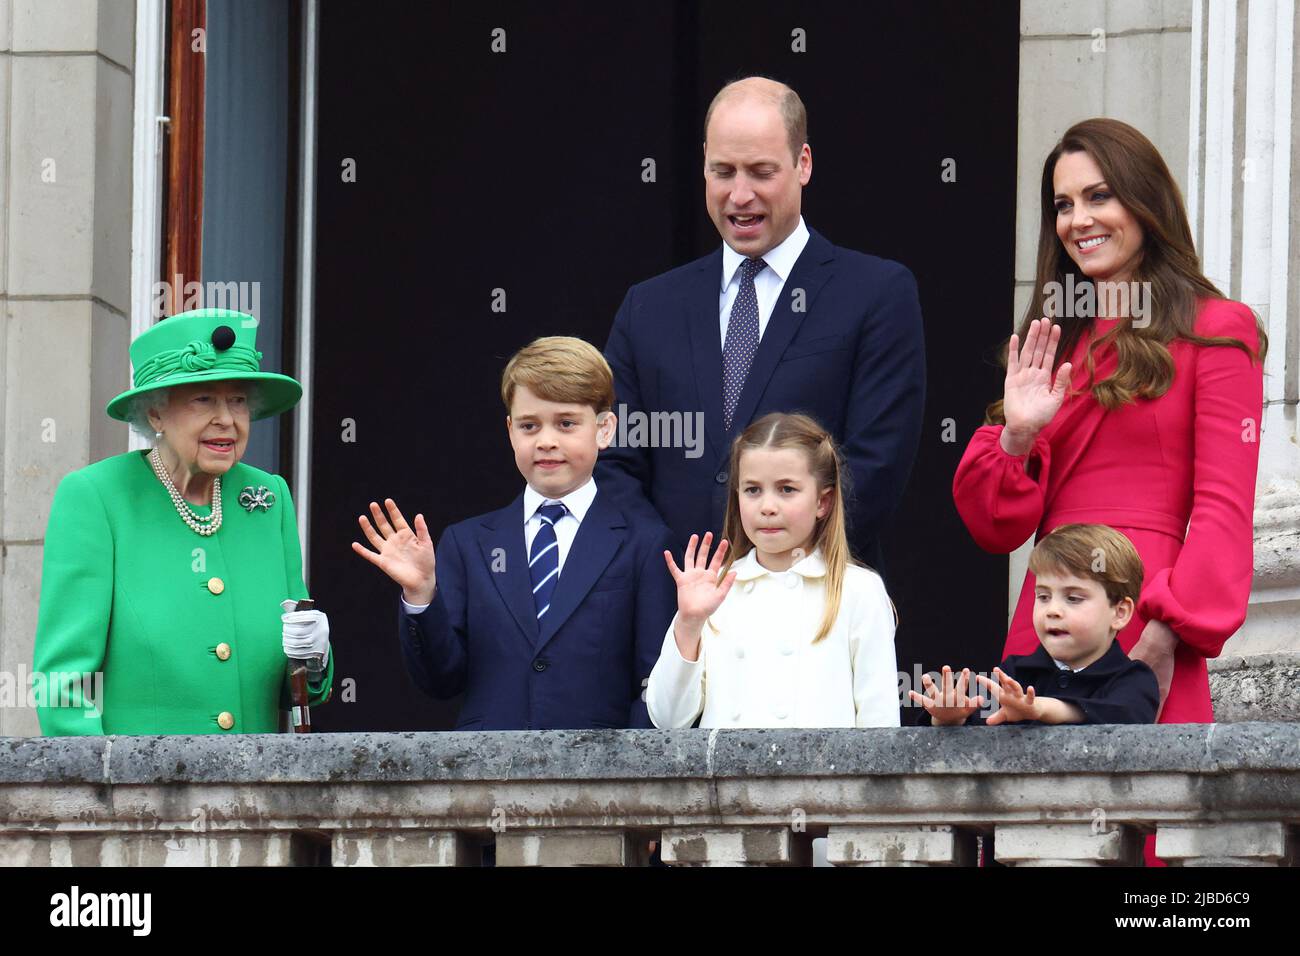 Königin Elizabeth II., Prinz George, Herzog von Cambridge, Prinzessin Charlotte, Prinz Louis, Herzogin von Cambridge auf dem Balkon des Buckingham Palace, London, am vierten Tag der Feierlichkeiten zum Platin-Jubiläum. Bilddatum: Sonntag, 5. Juni 2022. Stockfoto